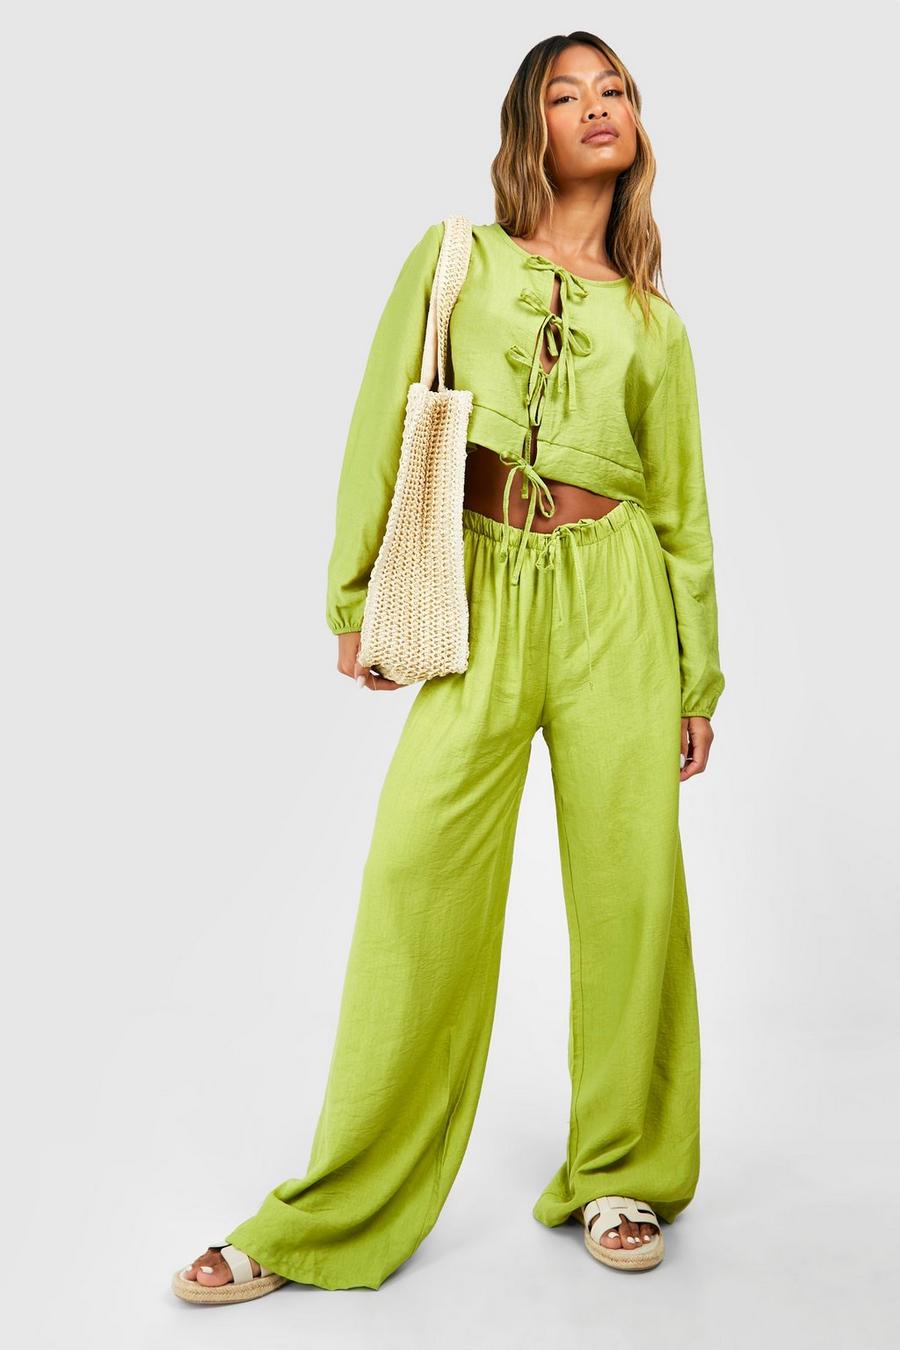 Blusa effetto lino con trama in rilievo, maniche ampie & pantaloni a gamba ampia, Olive